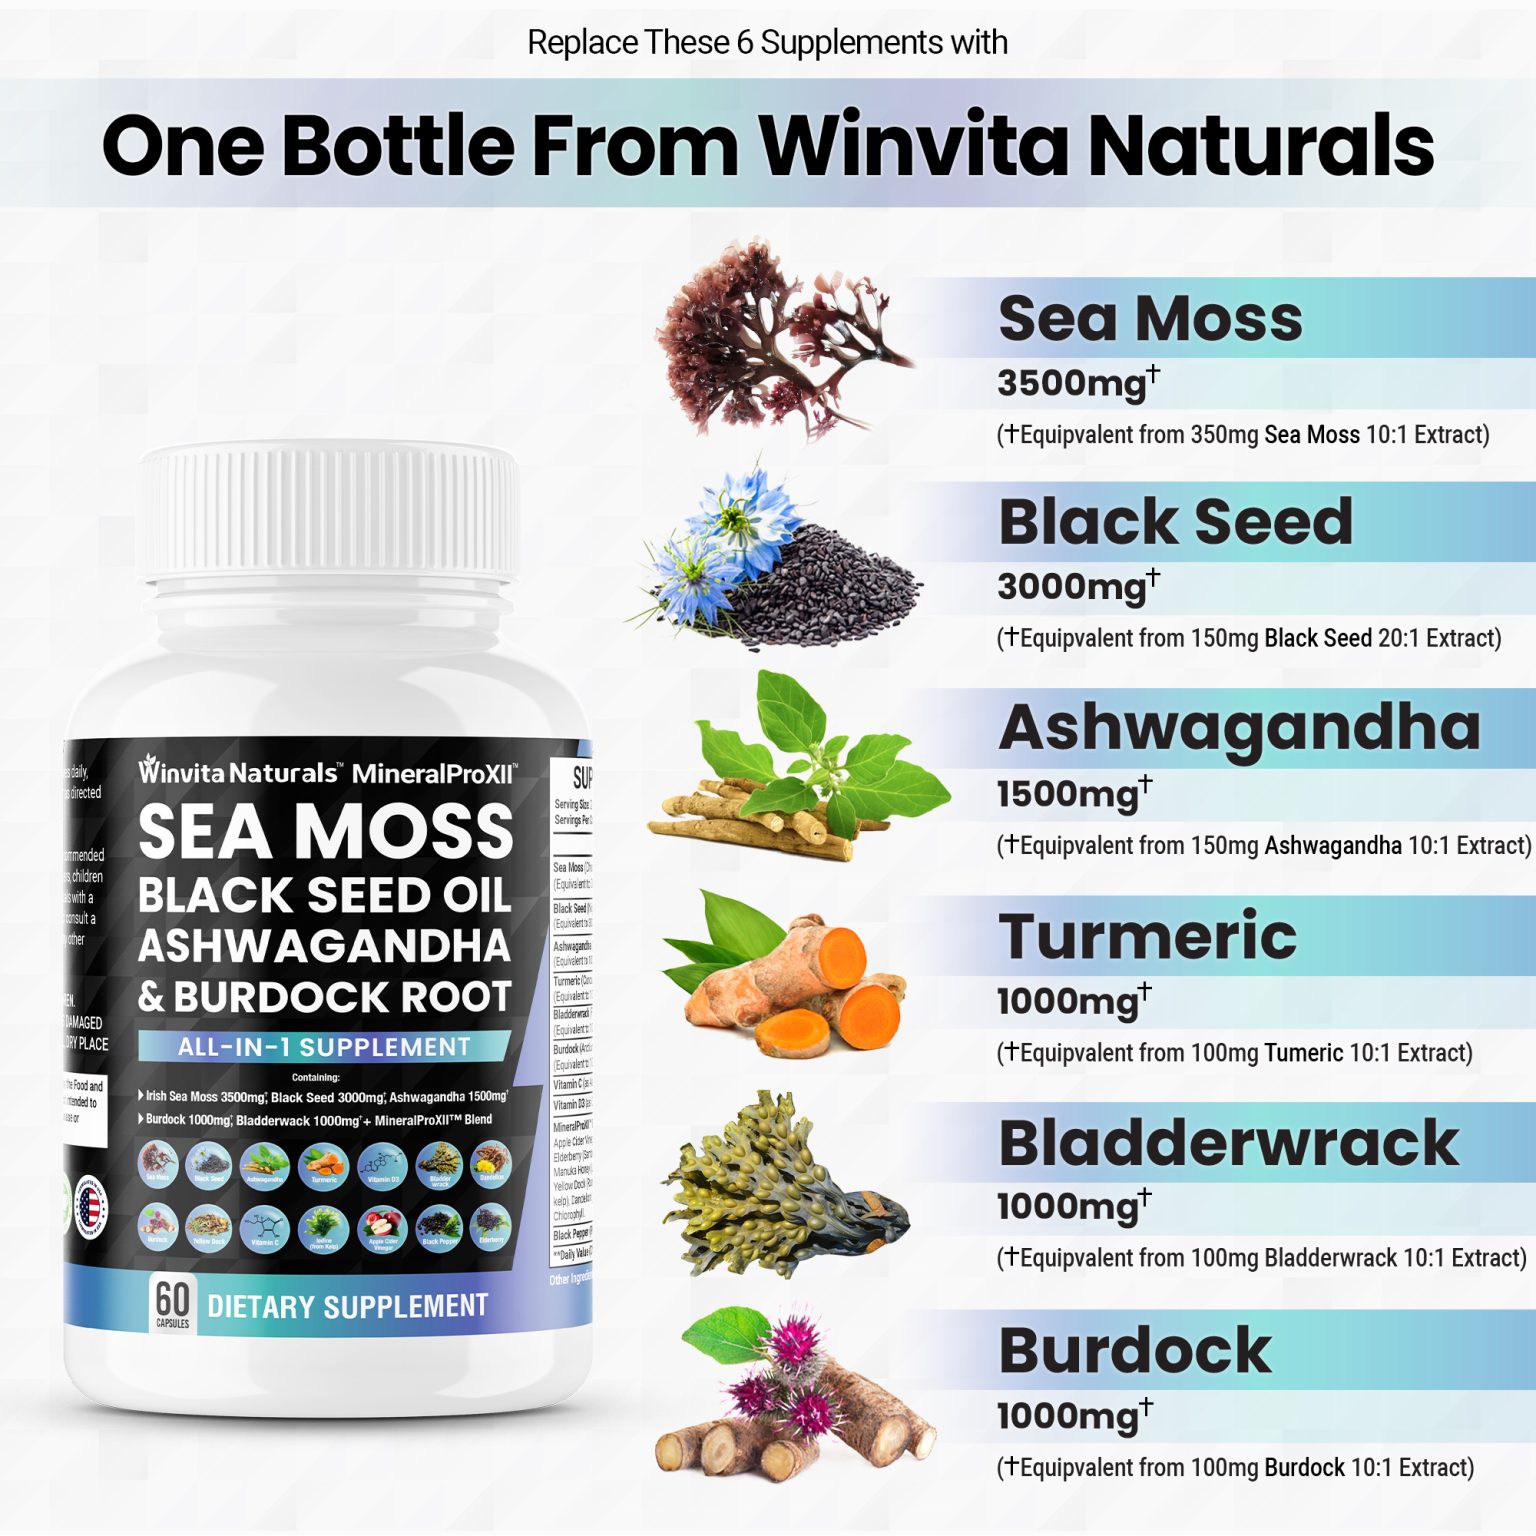 Sea Moss 3500mg Black Seed Oil 3000mg Ashwagandha 1500mg Turmeric ...